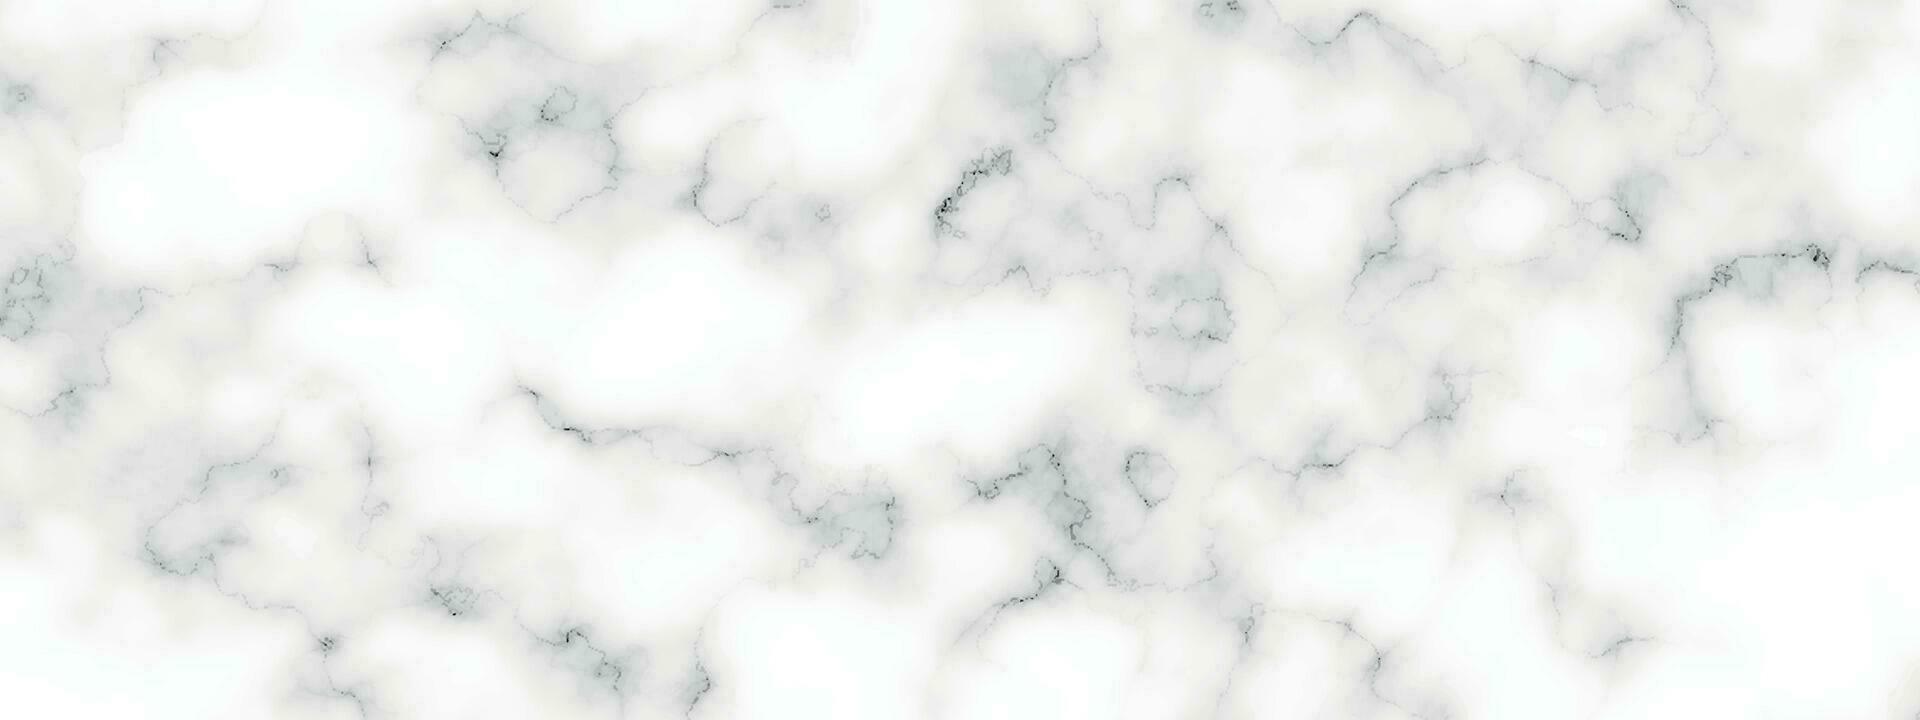 marmeren graniet wit panorama achtergrond. abstract licht elegant zwart Doen vloer, keramisch structuur steen plaat. marmeren vector structuur achtergrond met hoog oplossing.